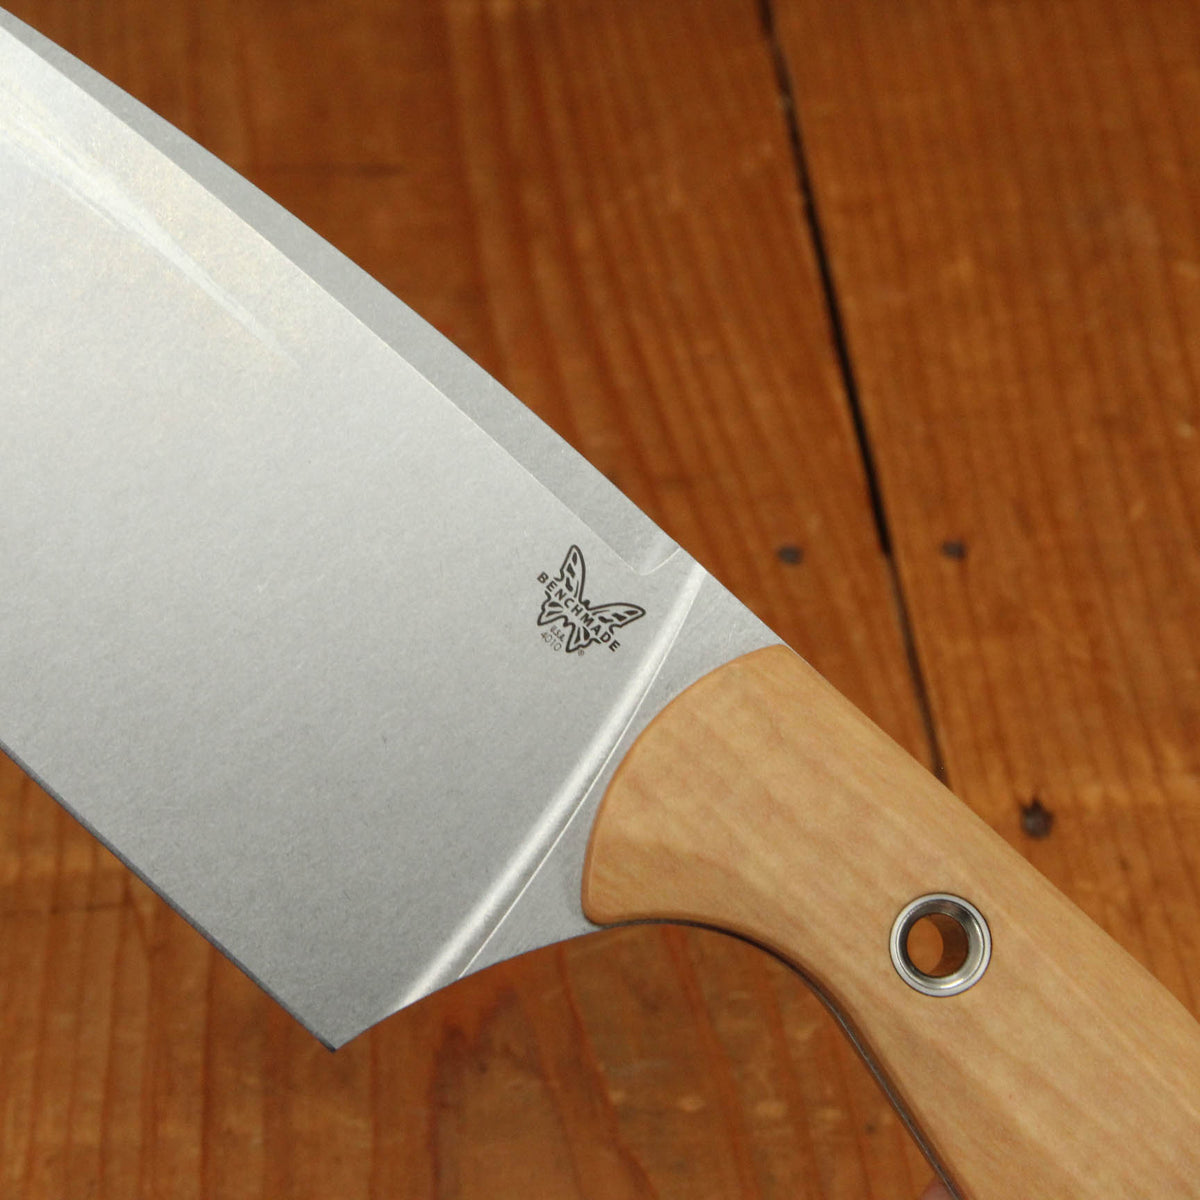 Benchmade Knife Company 3 Piece Maple Valley Knife Set Kitchen Knife